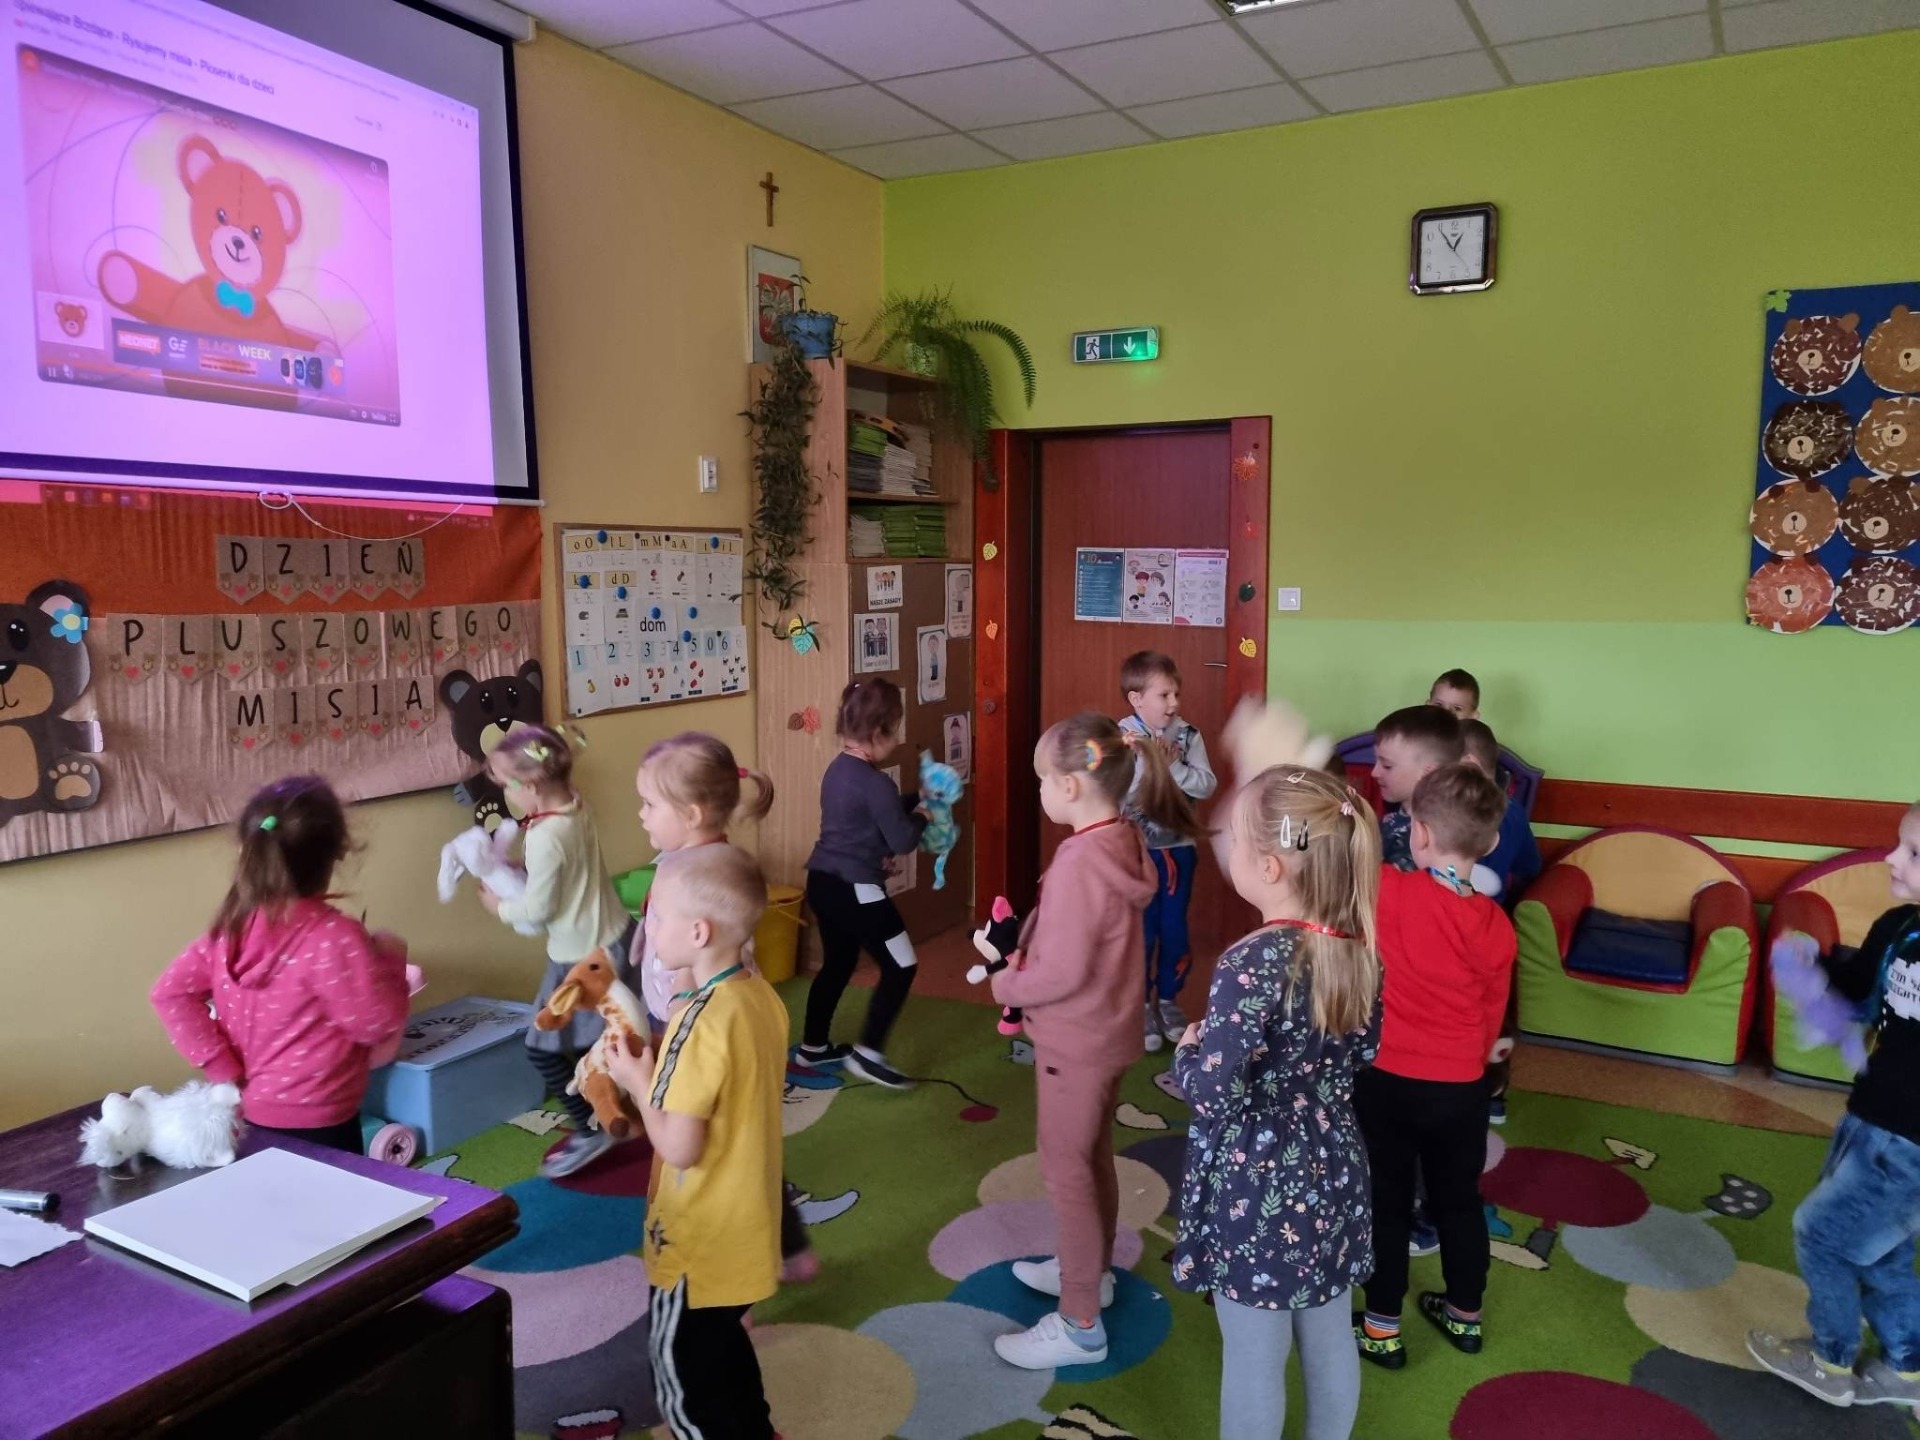 Przedszkolaki tańczą w sali przedszkolnej w rytm misiowych piosenek wyświetlanych na ekranie